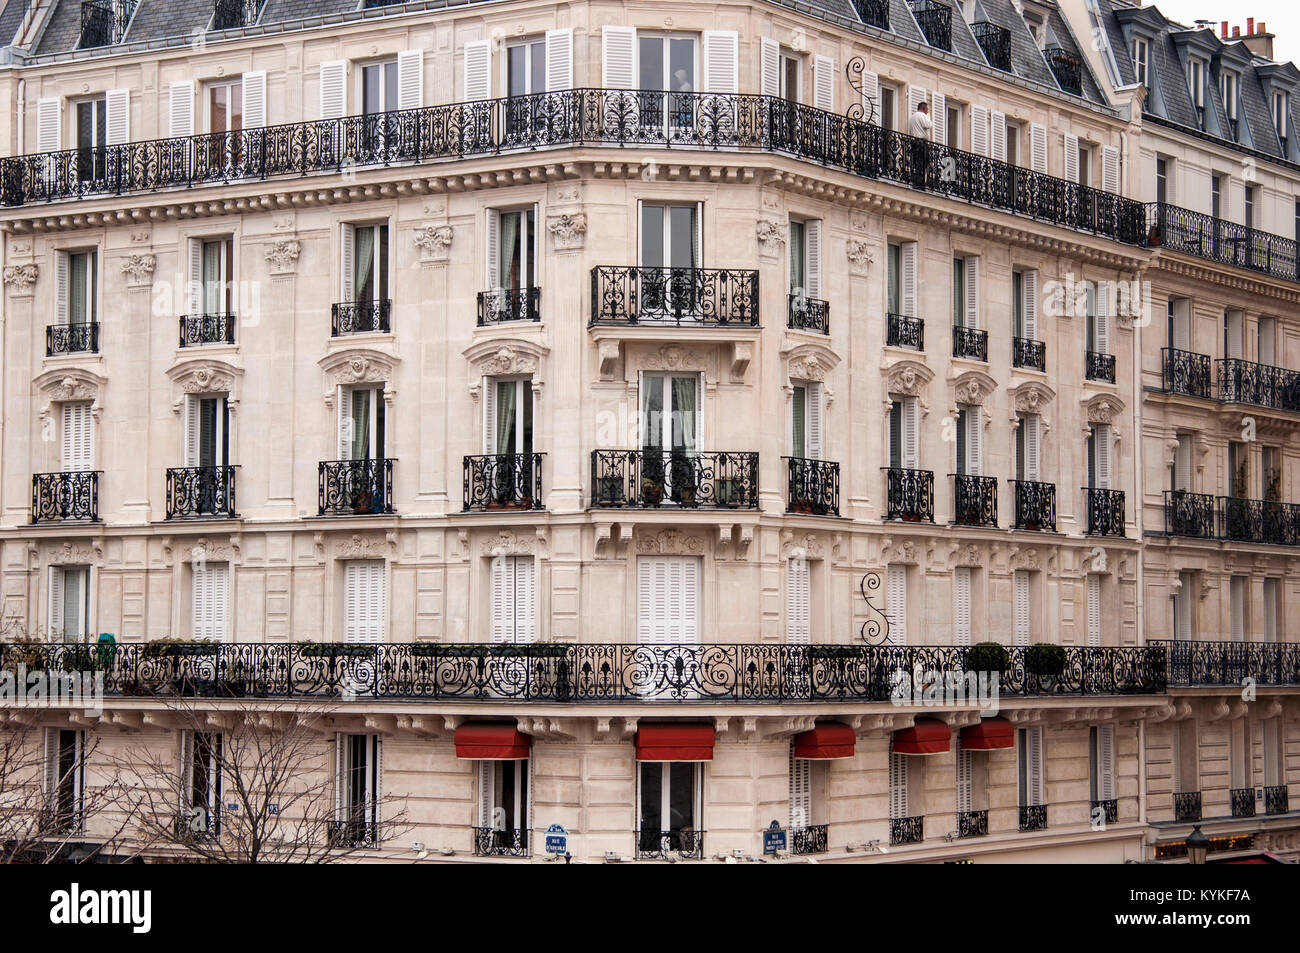 Un Bâtiment De Style Haussmannien Avec Des Balcons En Fer Noir à Paris